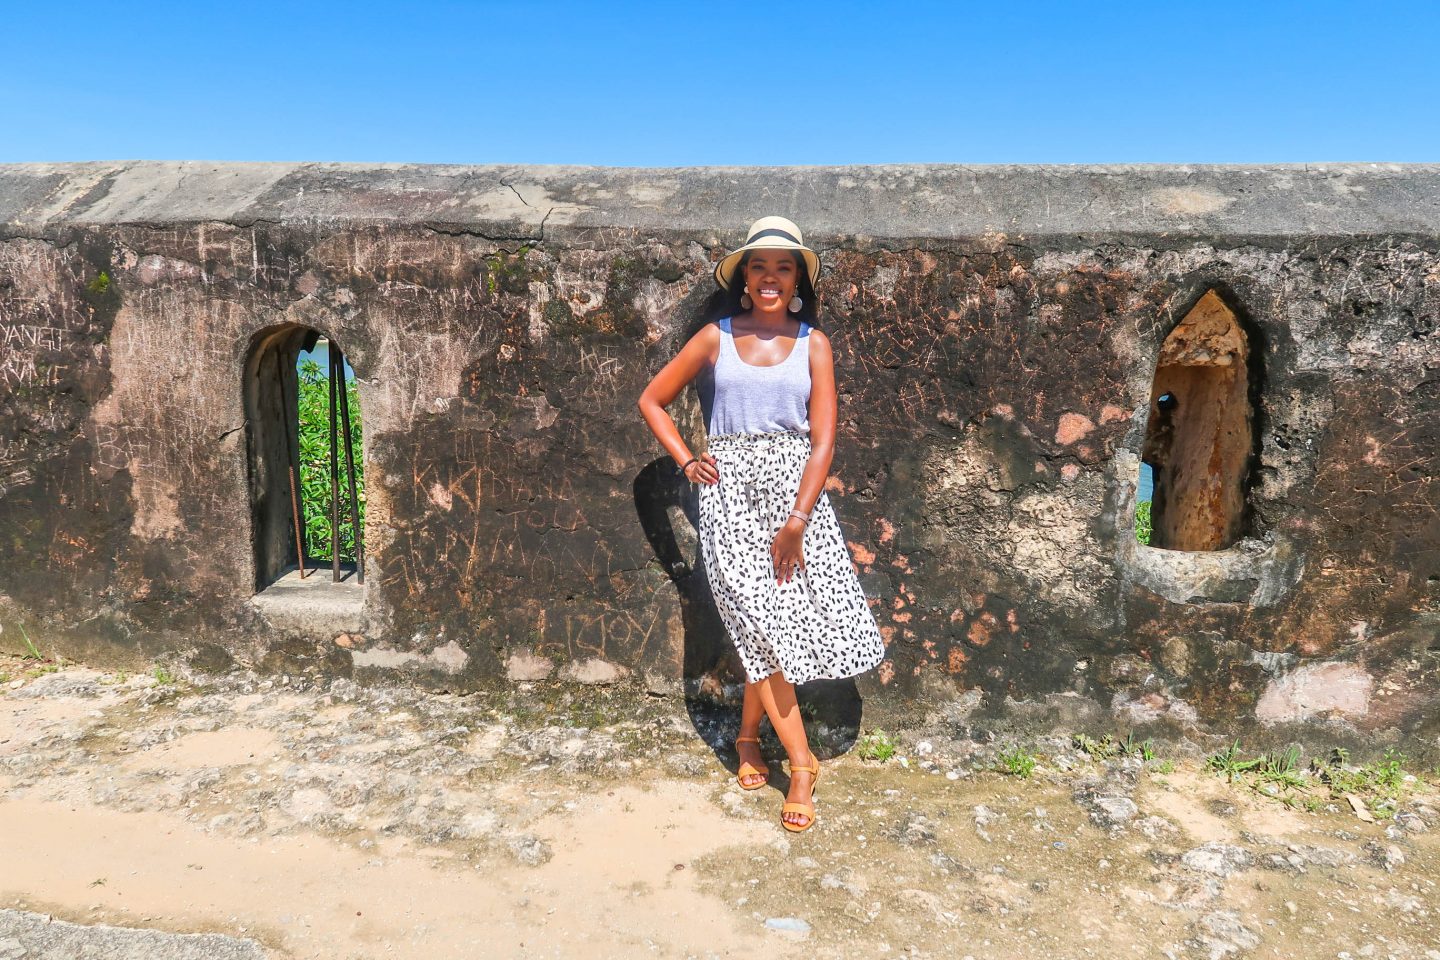 Fort Jesus Mombasa